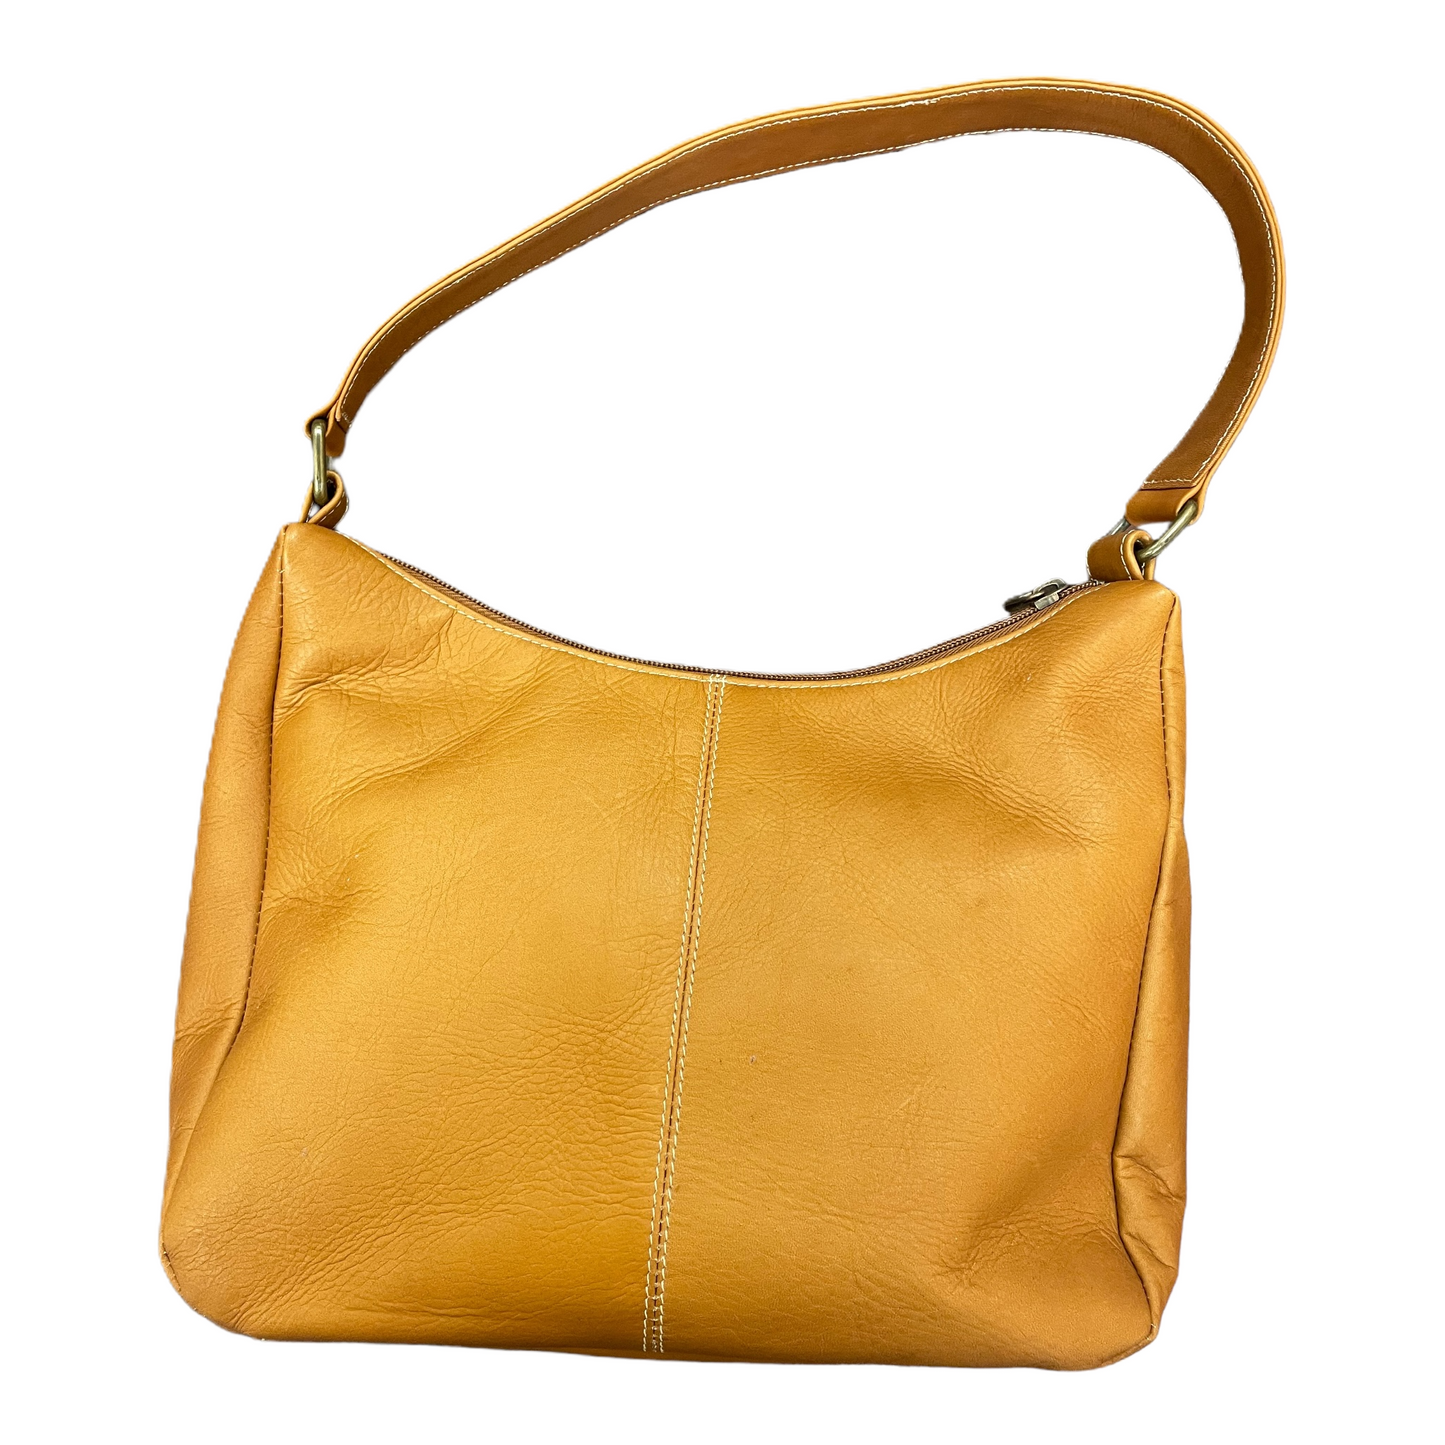 Handbag Leather By Le Donna Size: Medium